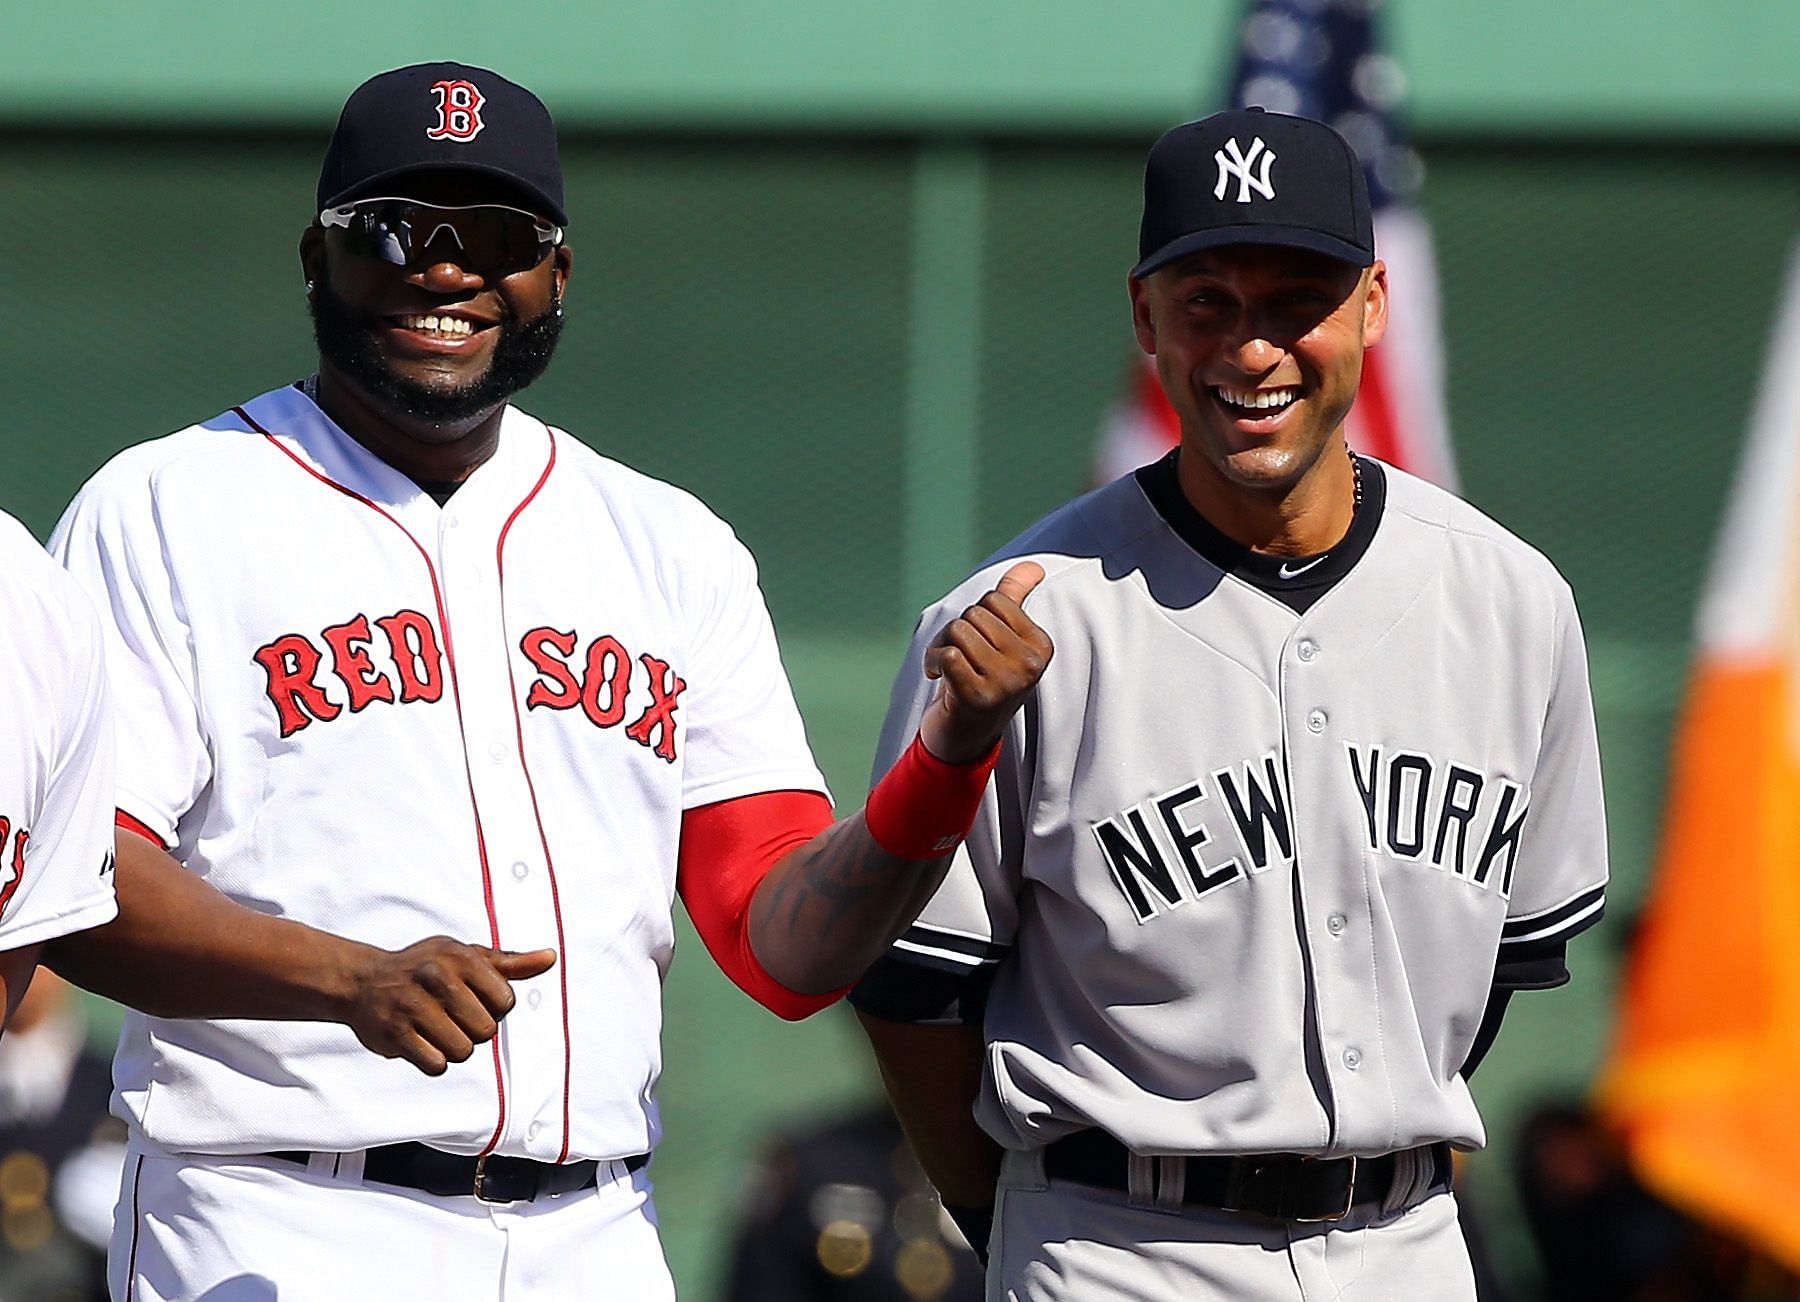 Red Sox's David Ortiz wraps up career of crushing Yankees pitching